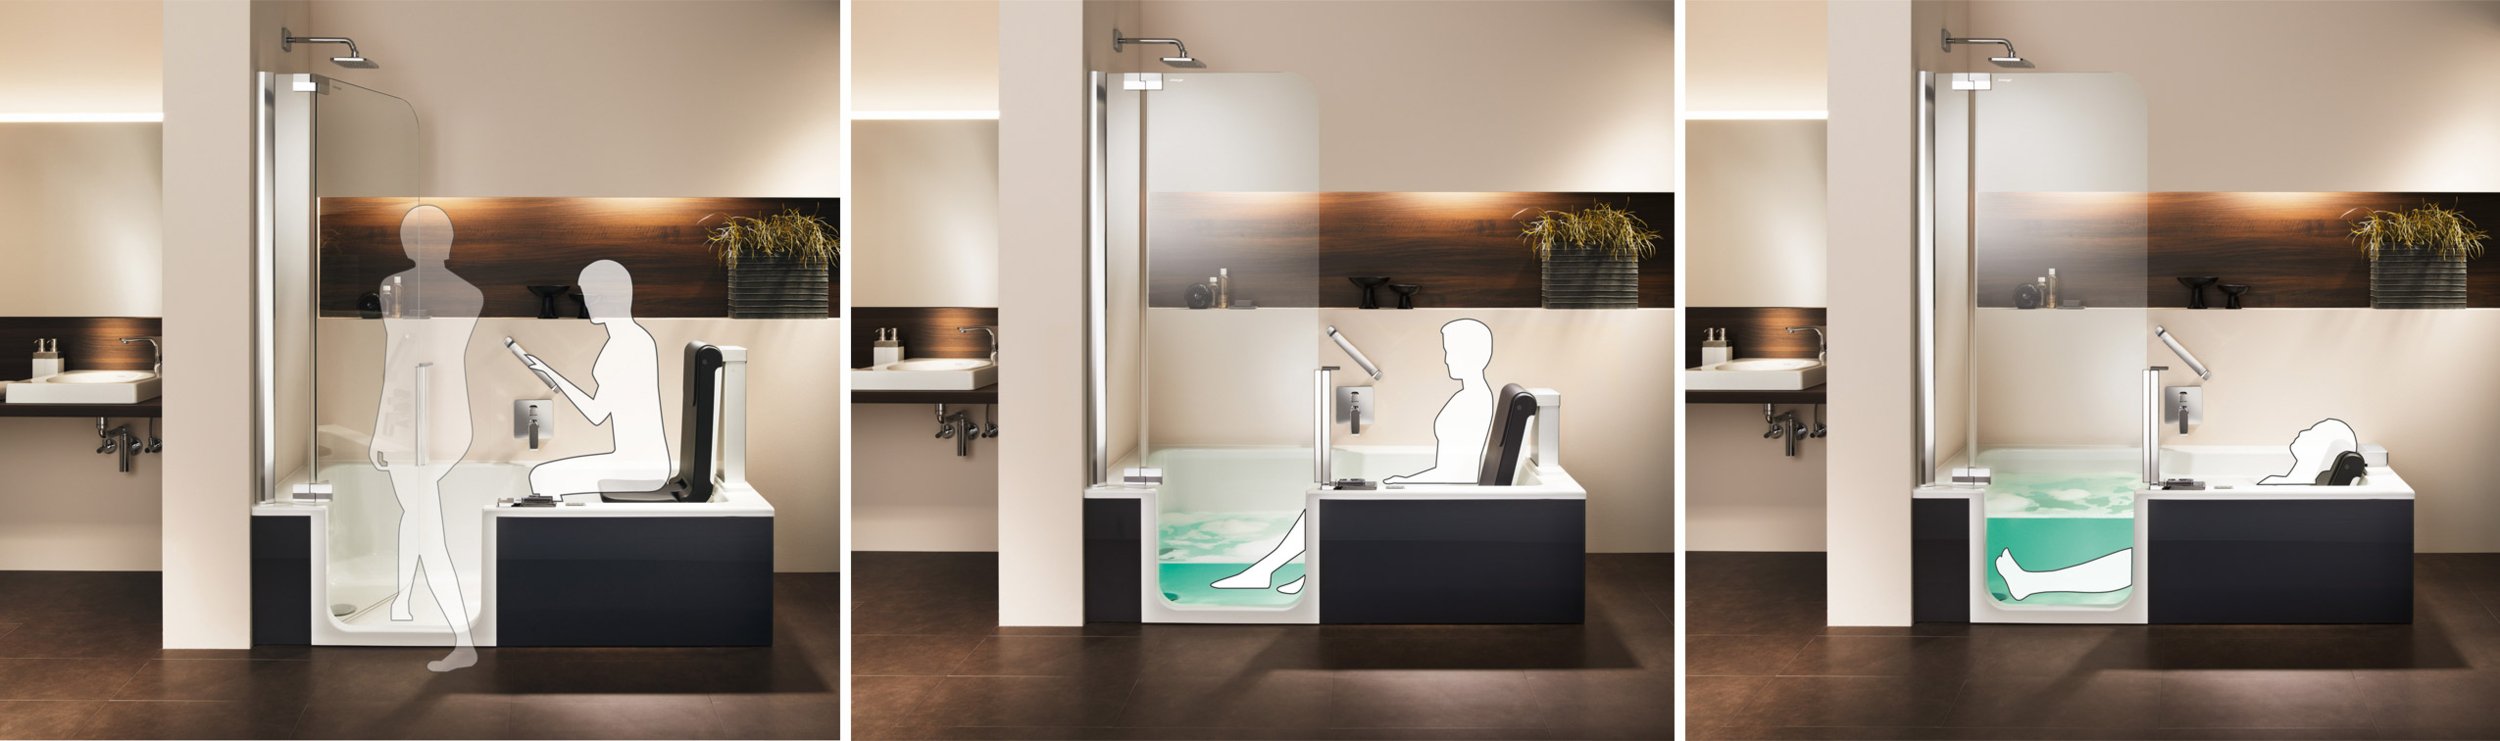 ARTLIFT douche-baignoire avec le confort d’un siège relevable | © Artweger GmbH. & Co. KG